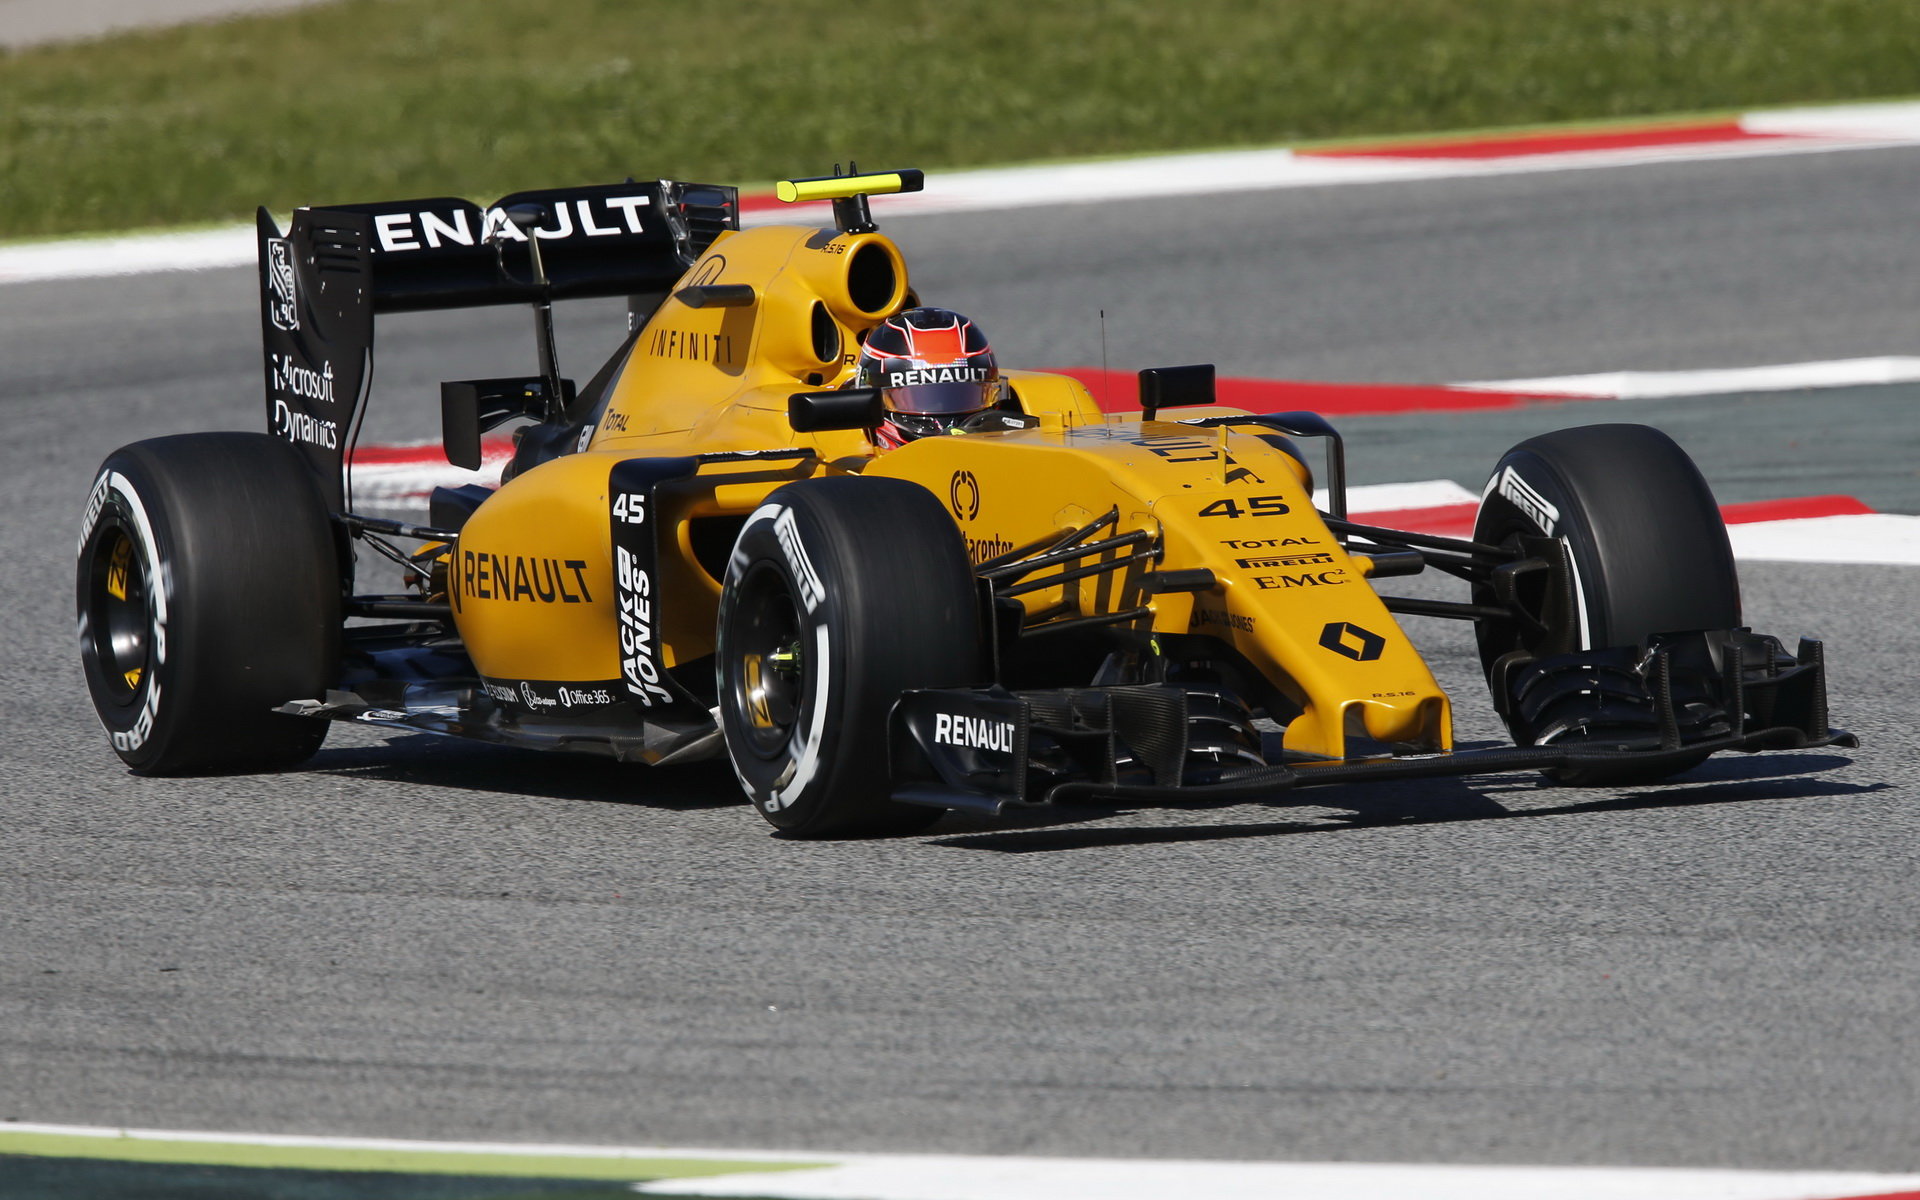 Letos se Ocon poprvé svezl v F1 ve Španělsku na Renaultu